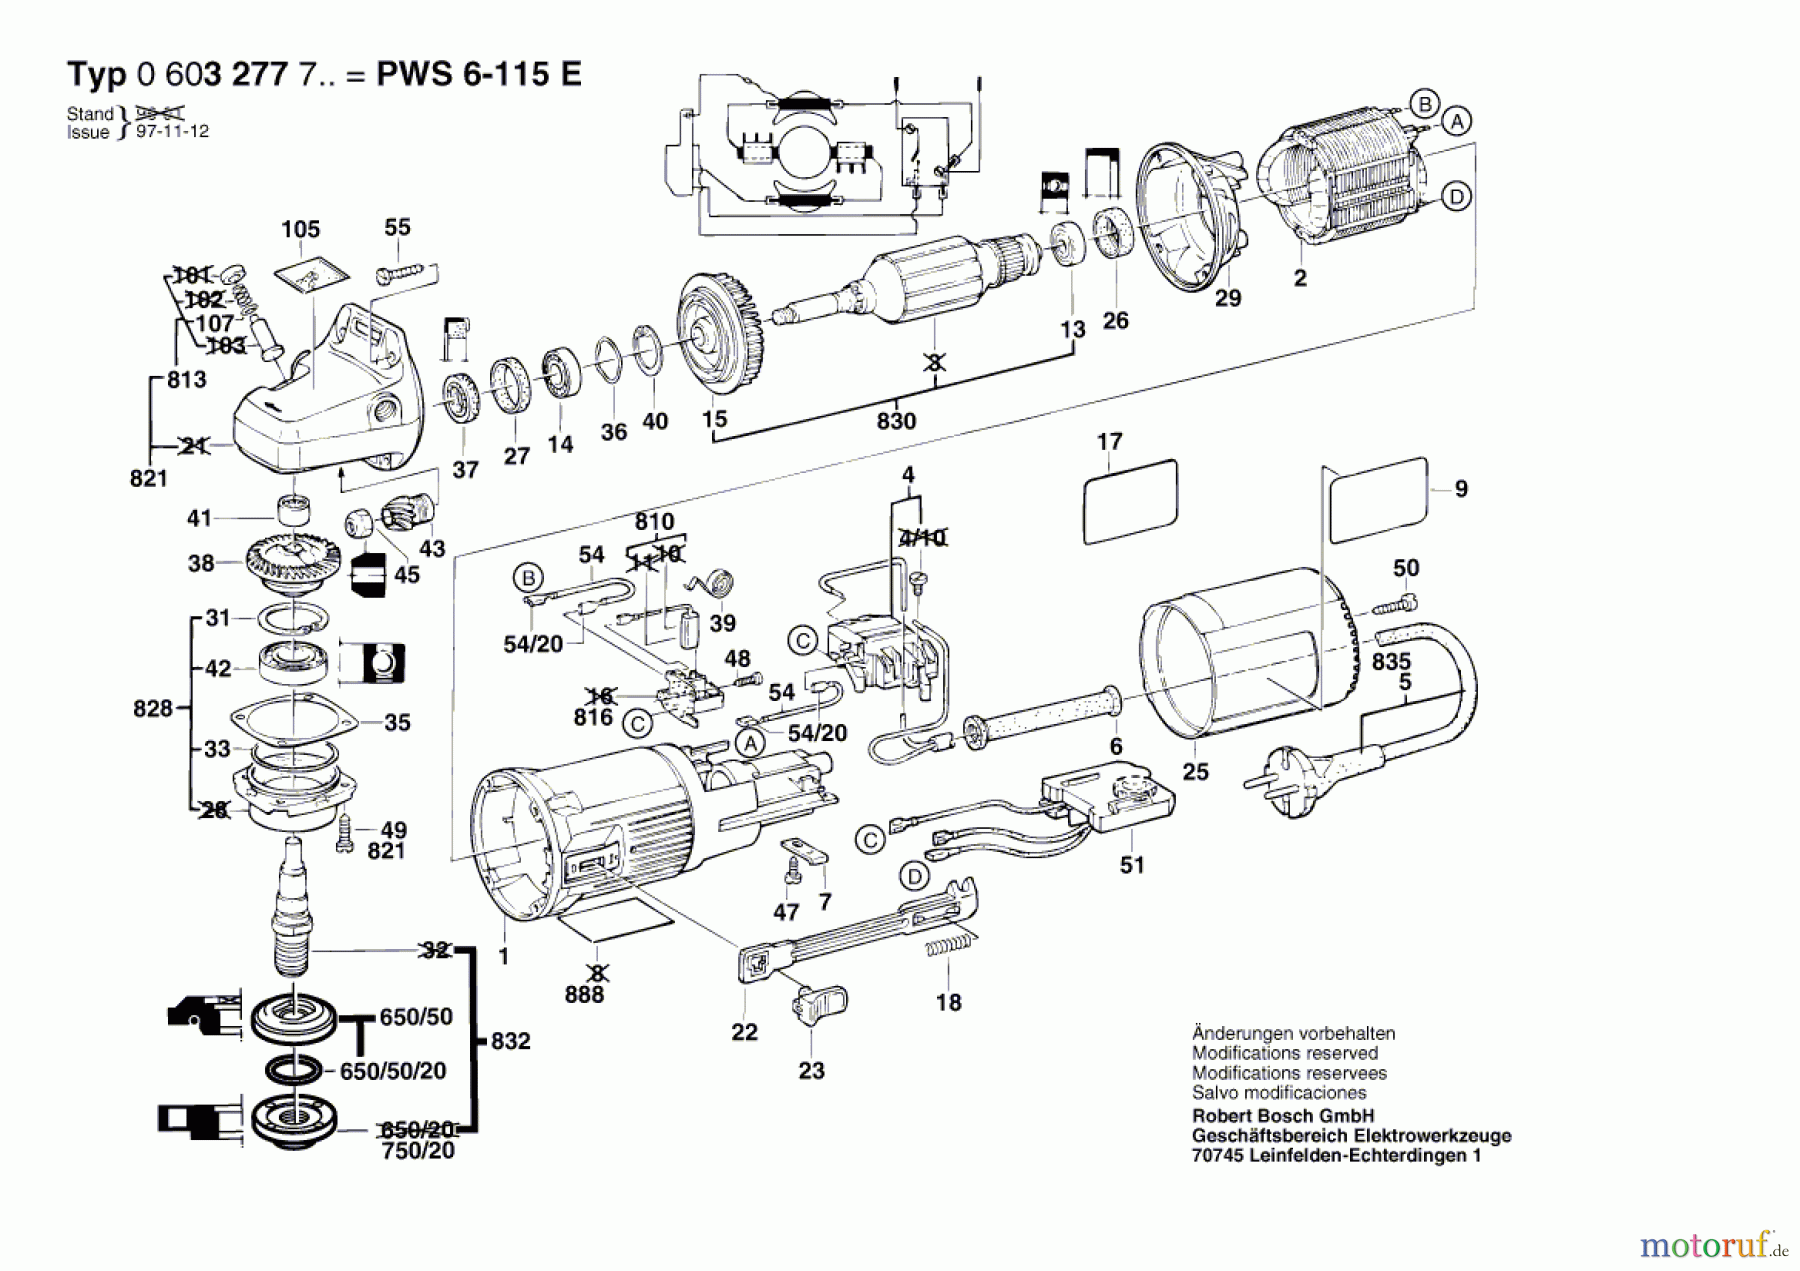  Bosch Werkzeug Winkelschleifer PWS 6-115 E Seite 1